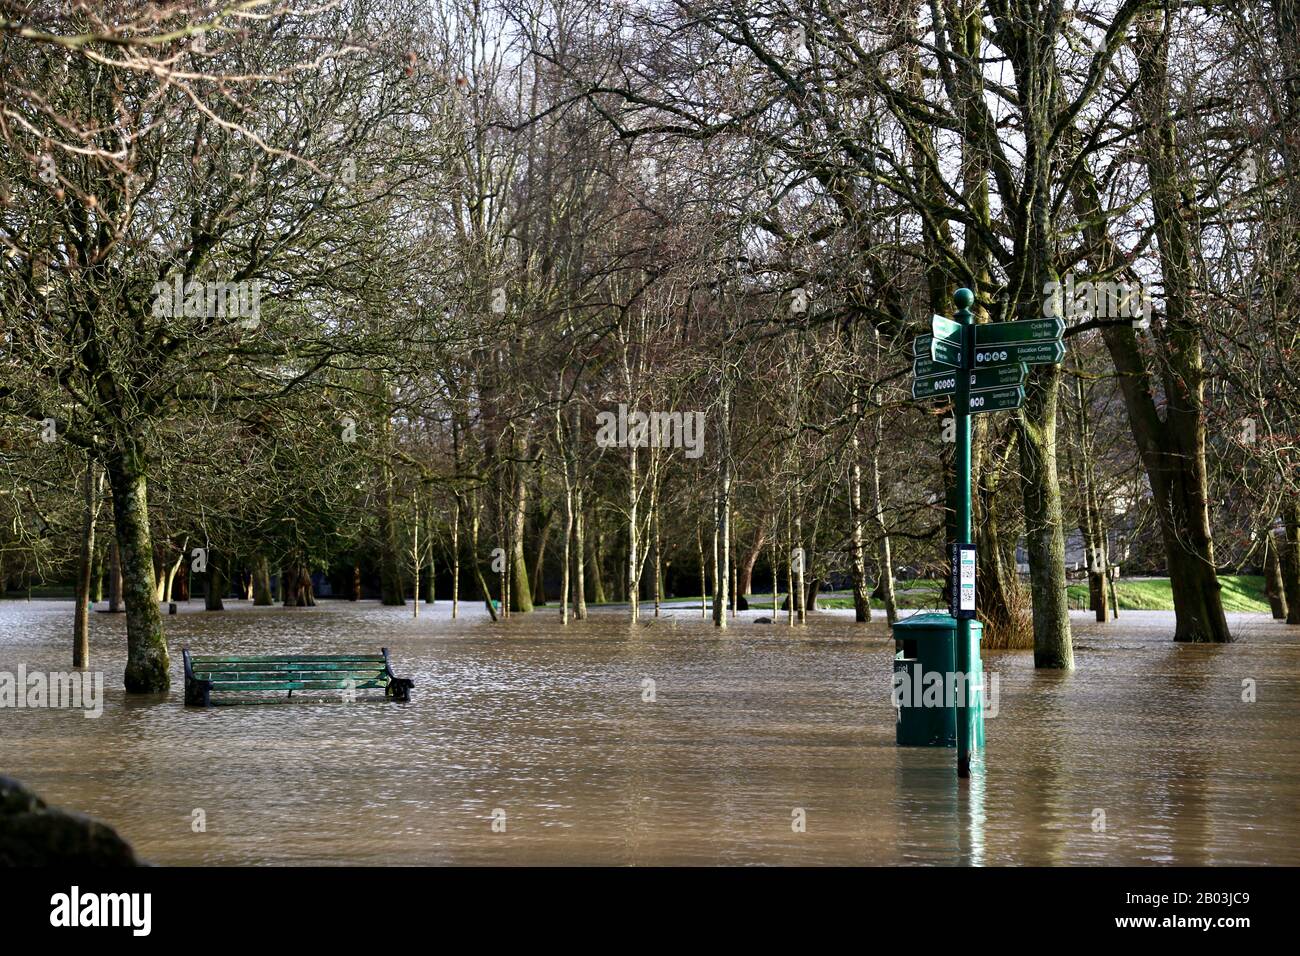 Cardiff, Galles. Febbraio 17th 2020. Storm Dennis, un ciclone di bomba, ha colpito il Regno Unito il sabato, subito dopo la tempesta Ciara, causando un'inondazione diffusa Foto Stock